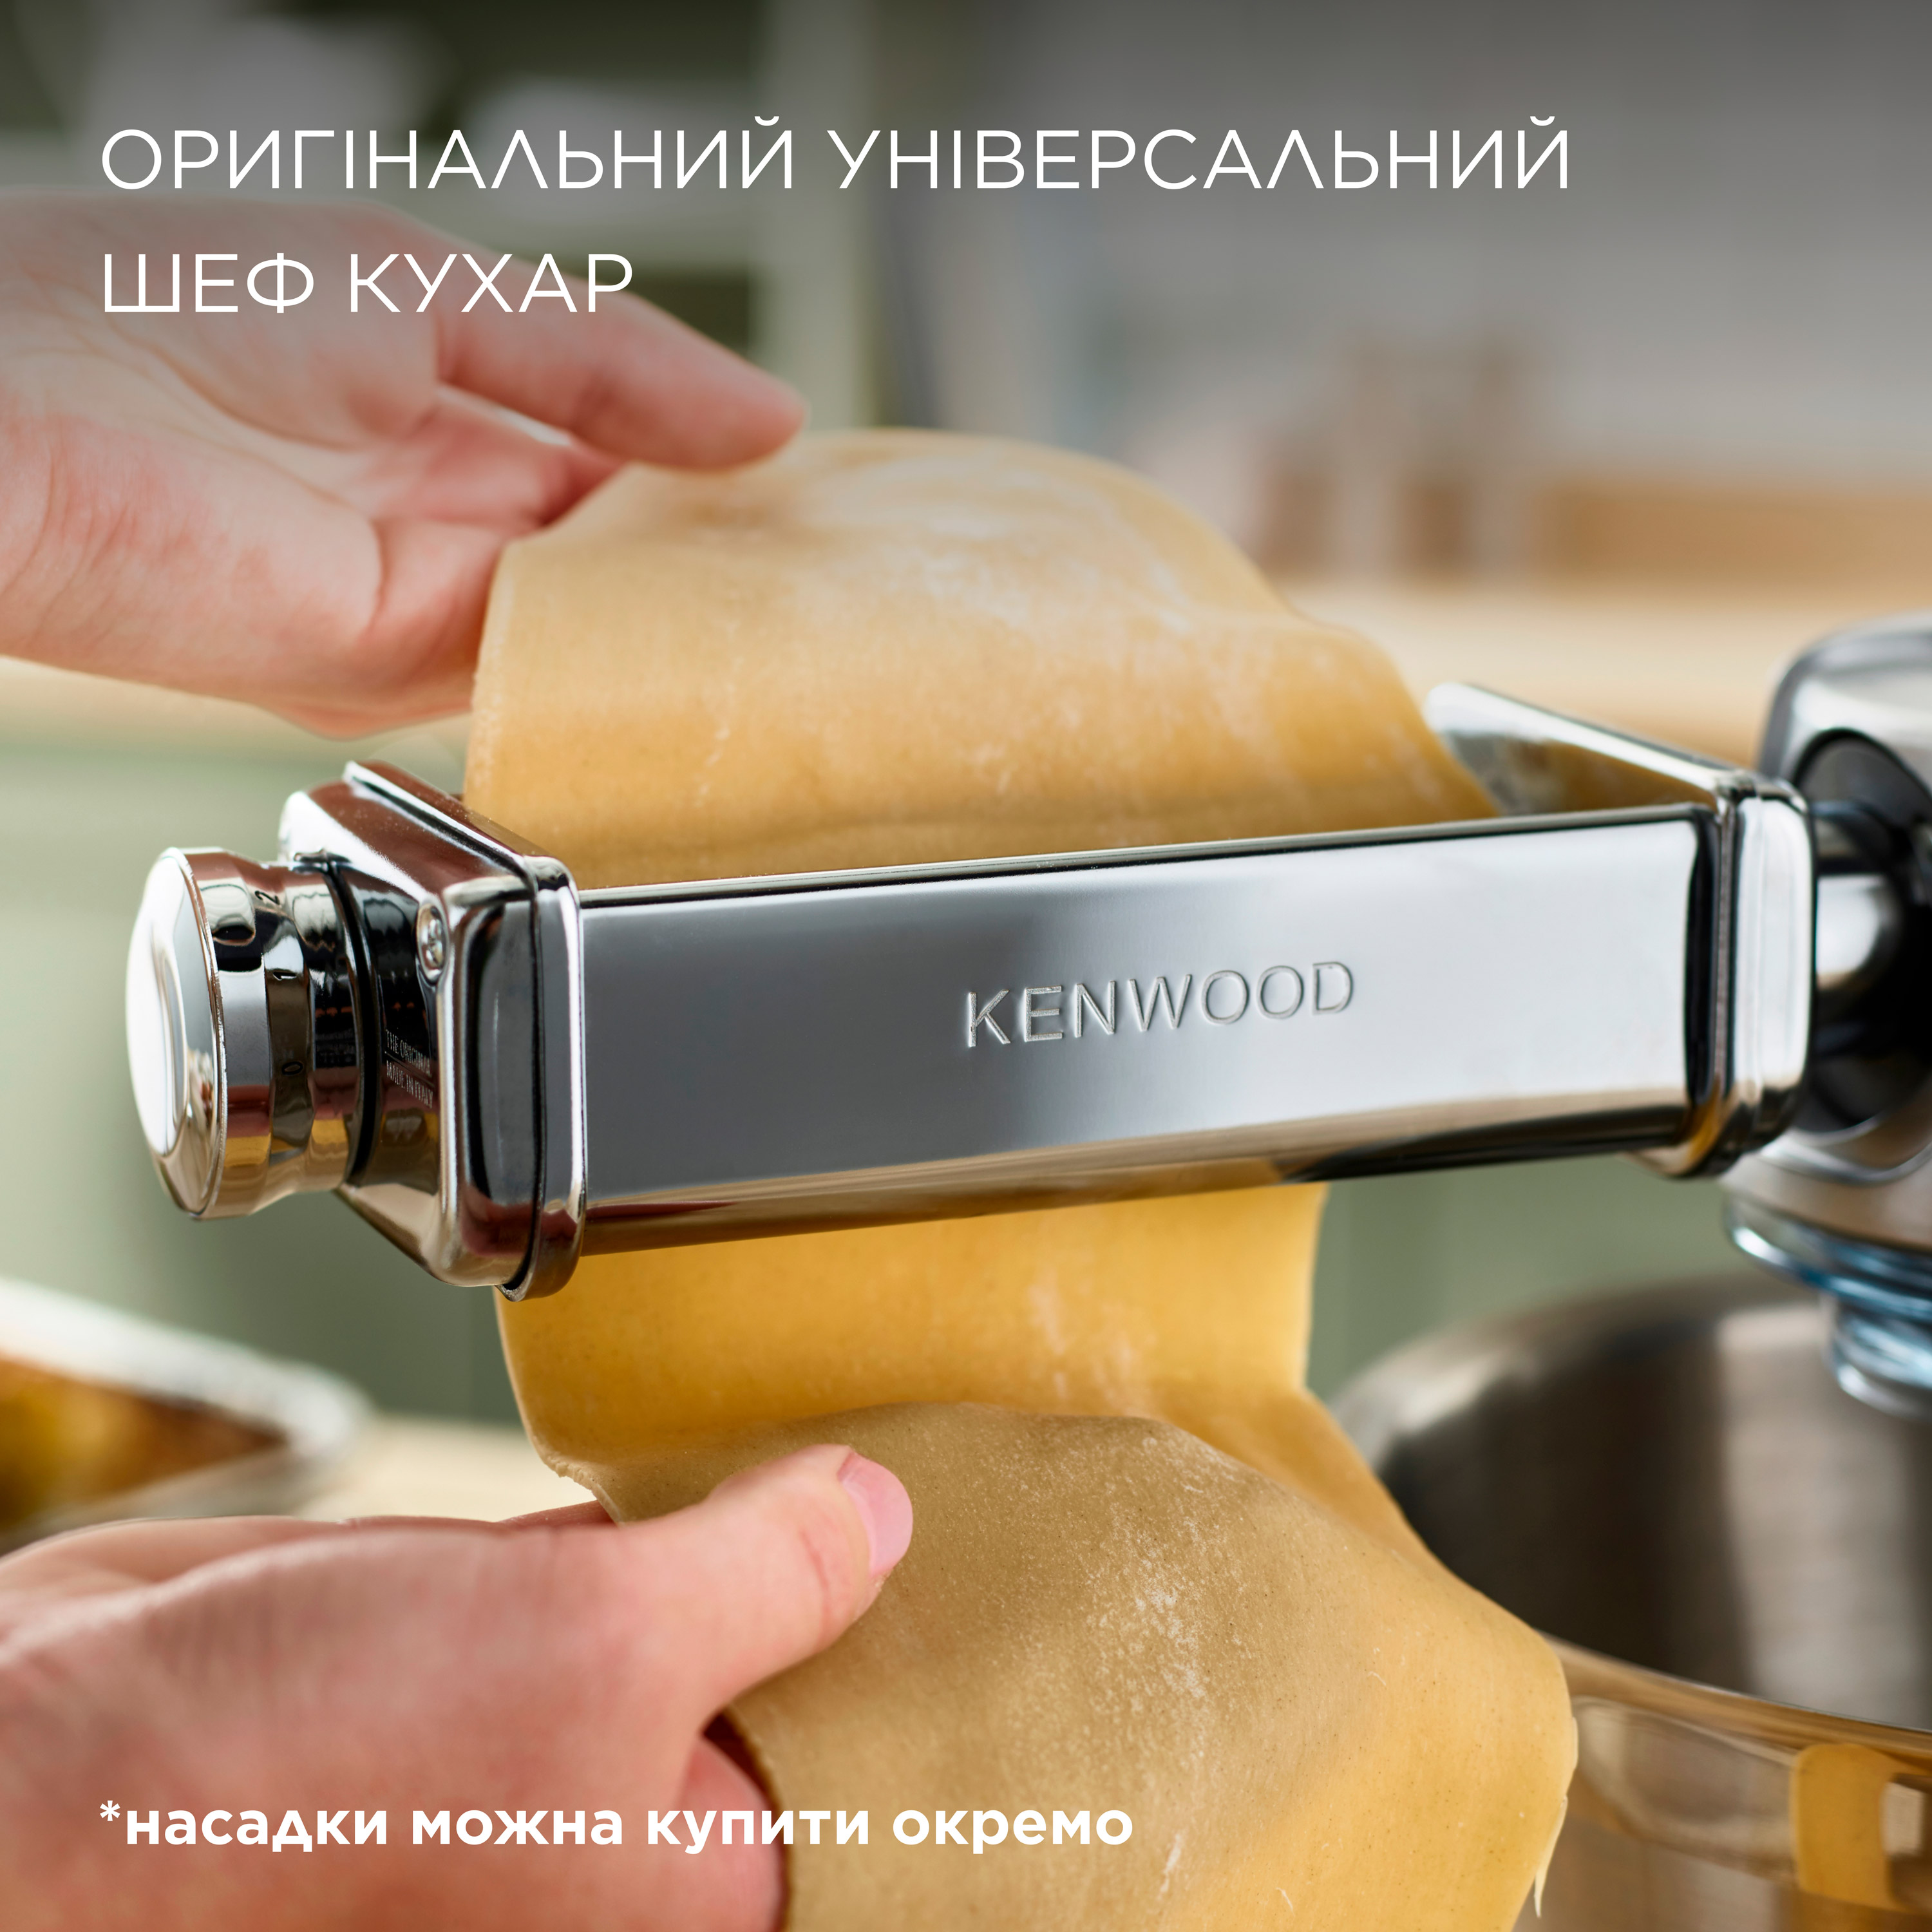 Кухонна машина Kenwood KVL 4100 S Chef XL огляд - фото 11